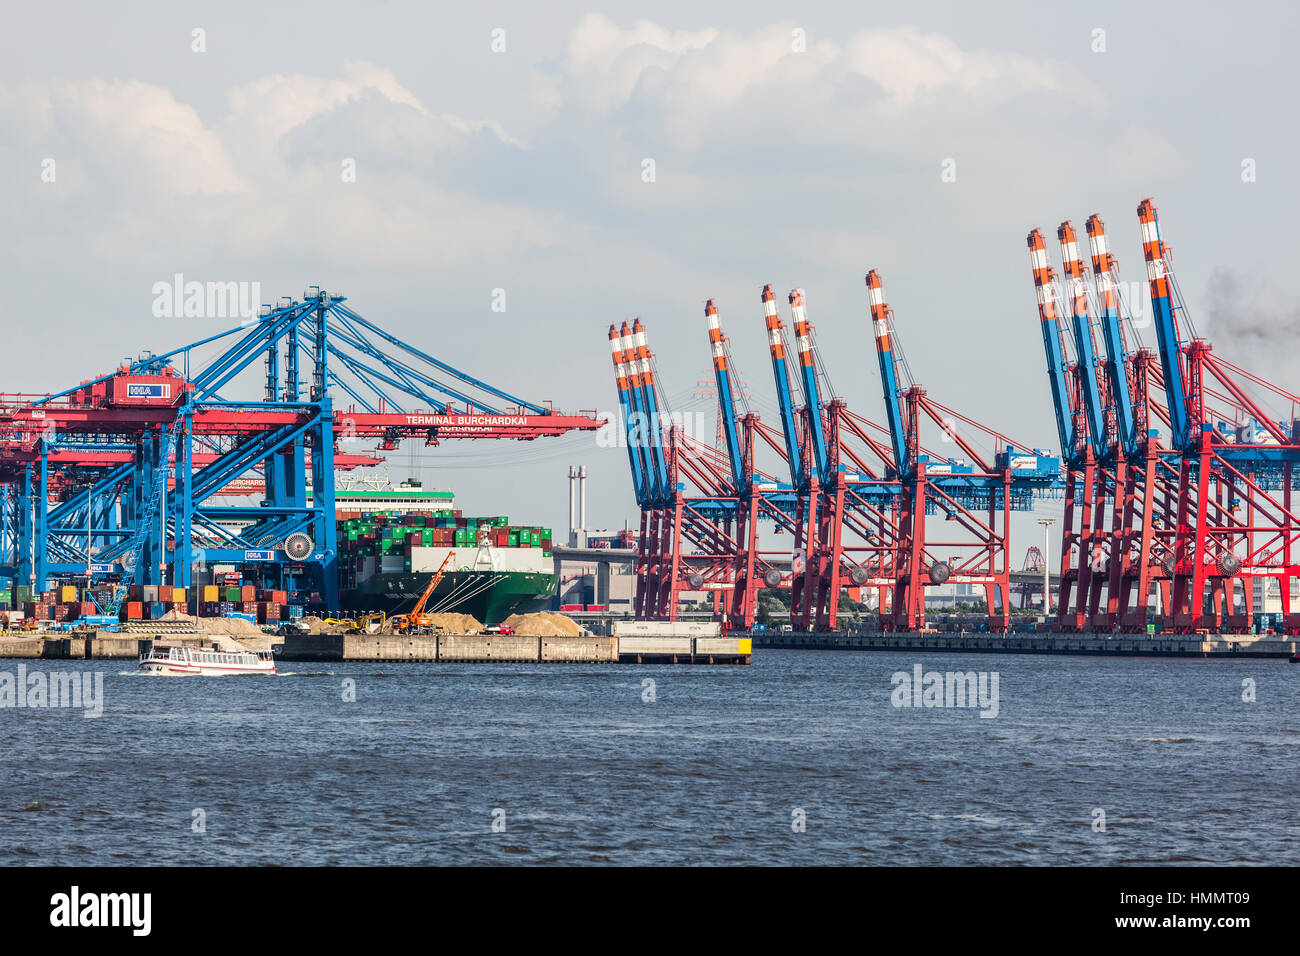 Hamburg, Deutschland - 5 Juli: Containerschiff im Containerhafen mit hohen Kräne im Hafen Hamburg, Deutschland am 5. Juli 2013 Stockfoto